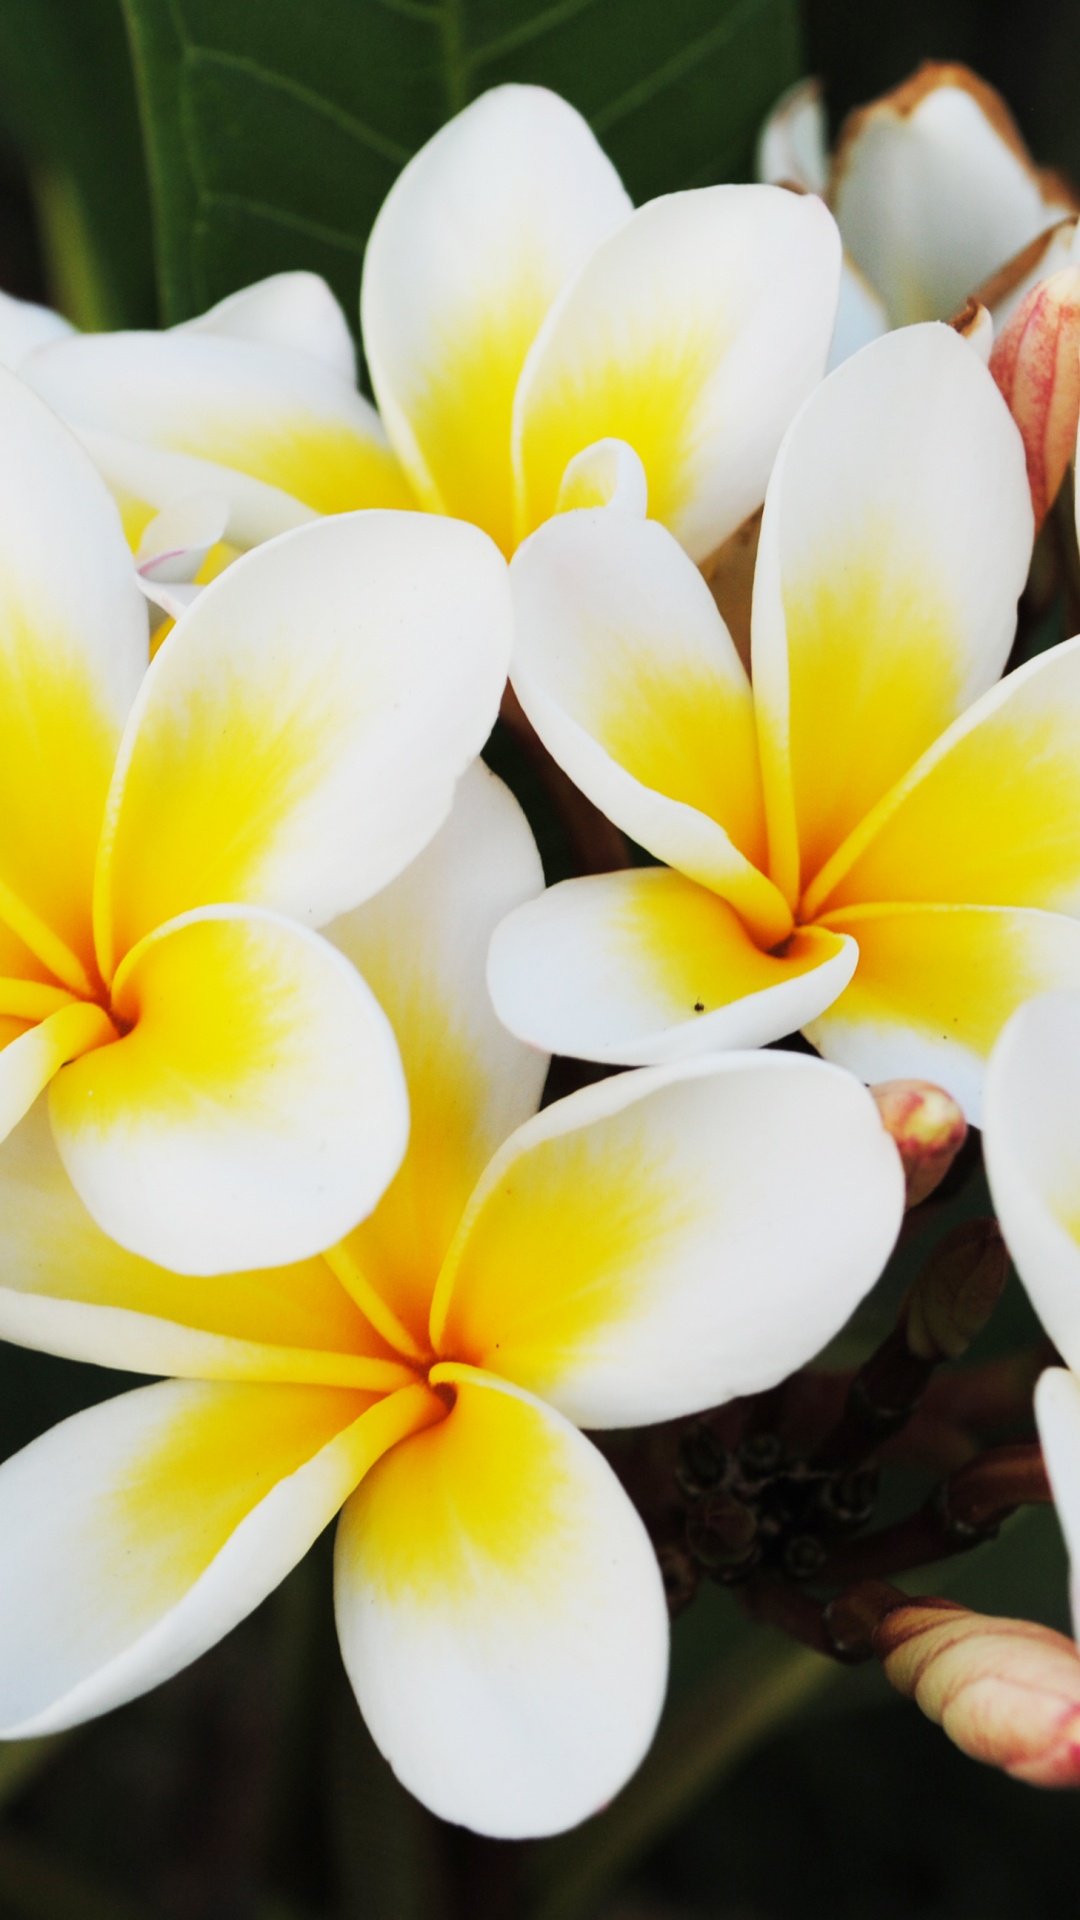 Flor Blanca y Amarilla en Fotografía de Cerca. Wallpaper in 1080x1920 Resolution